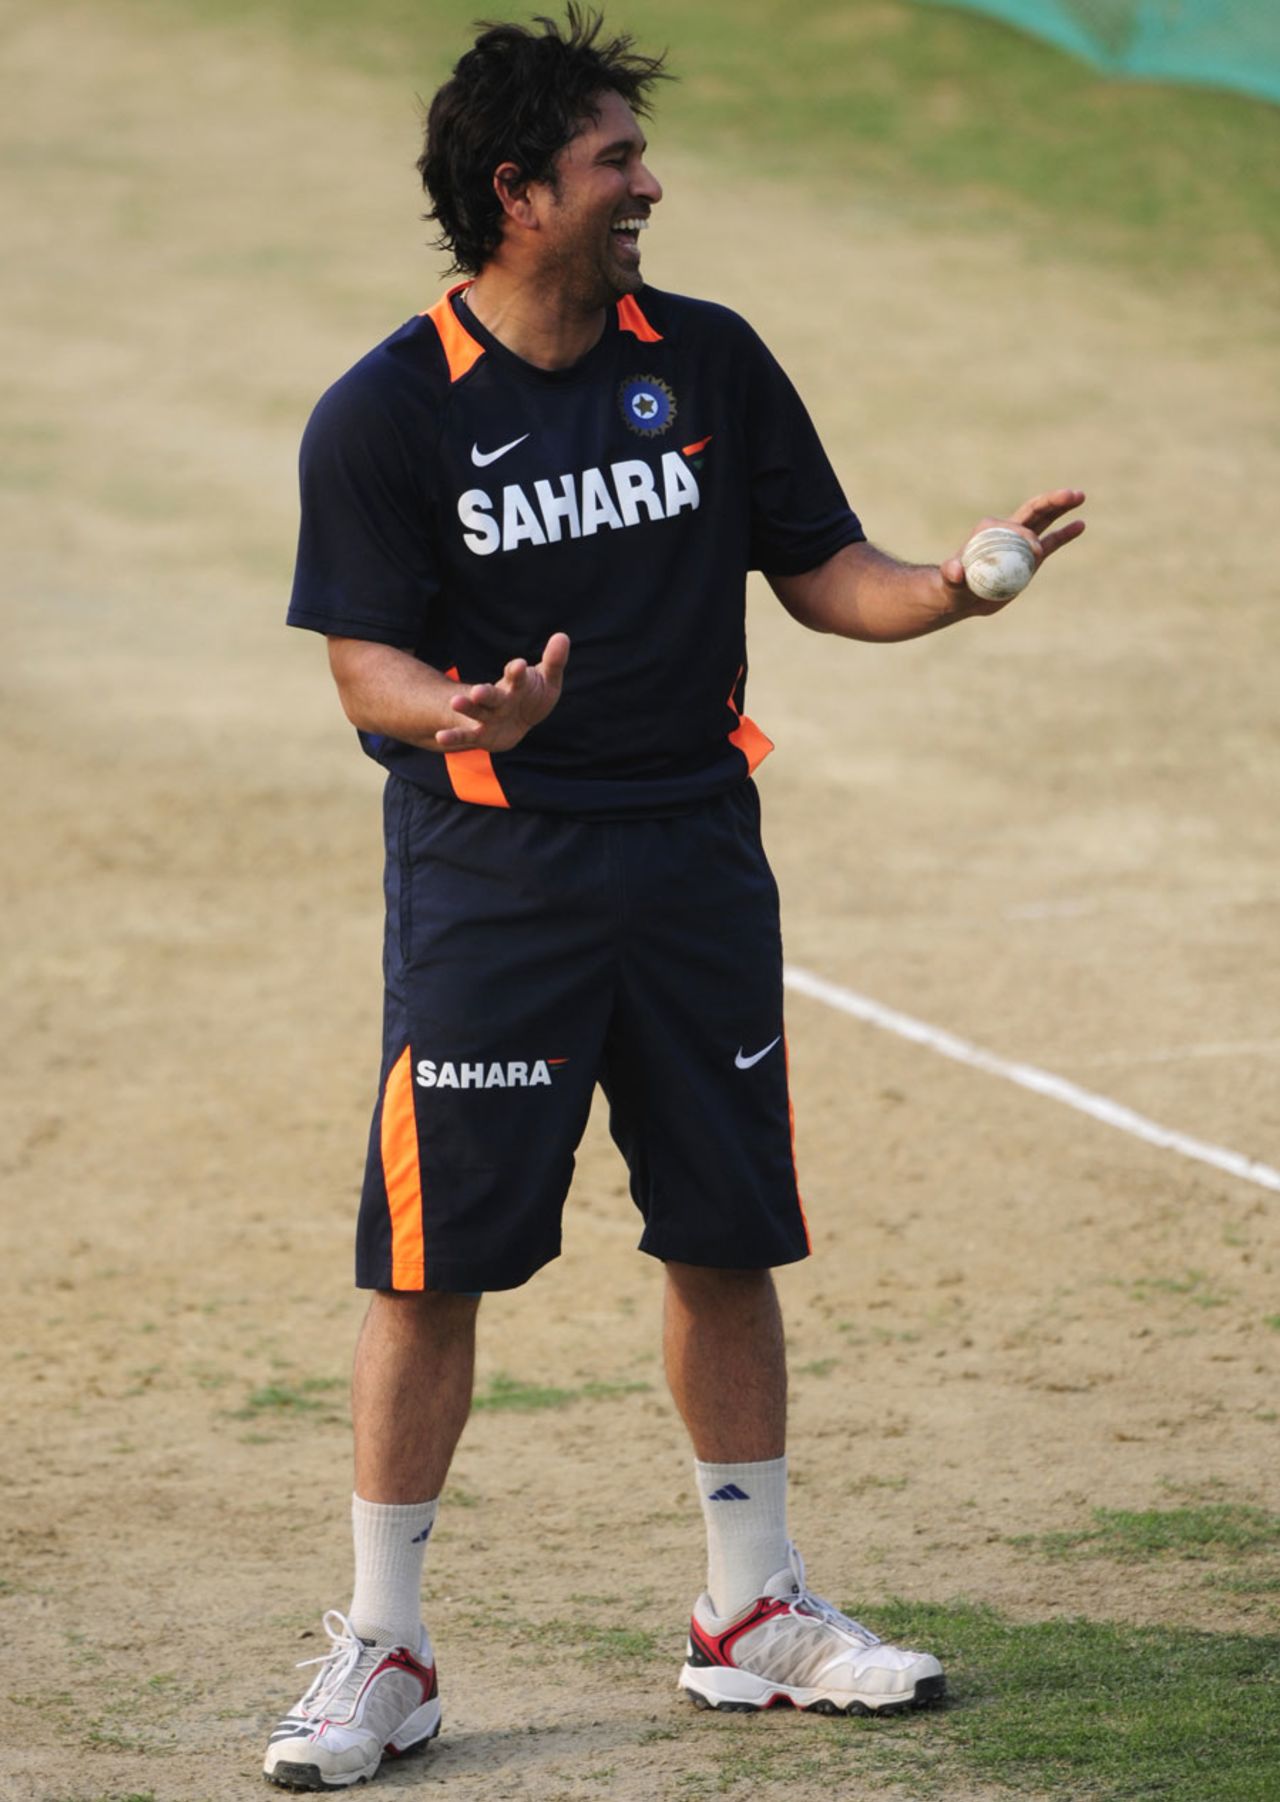 Sachin Tendulkar has a ball during nets, Mirpur, March 14, 2012